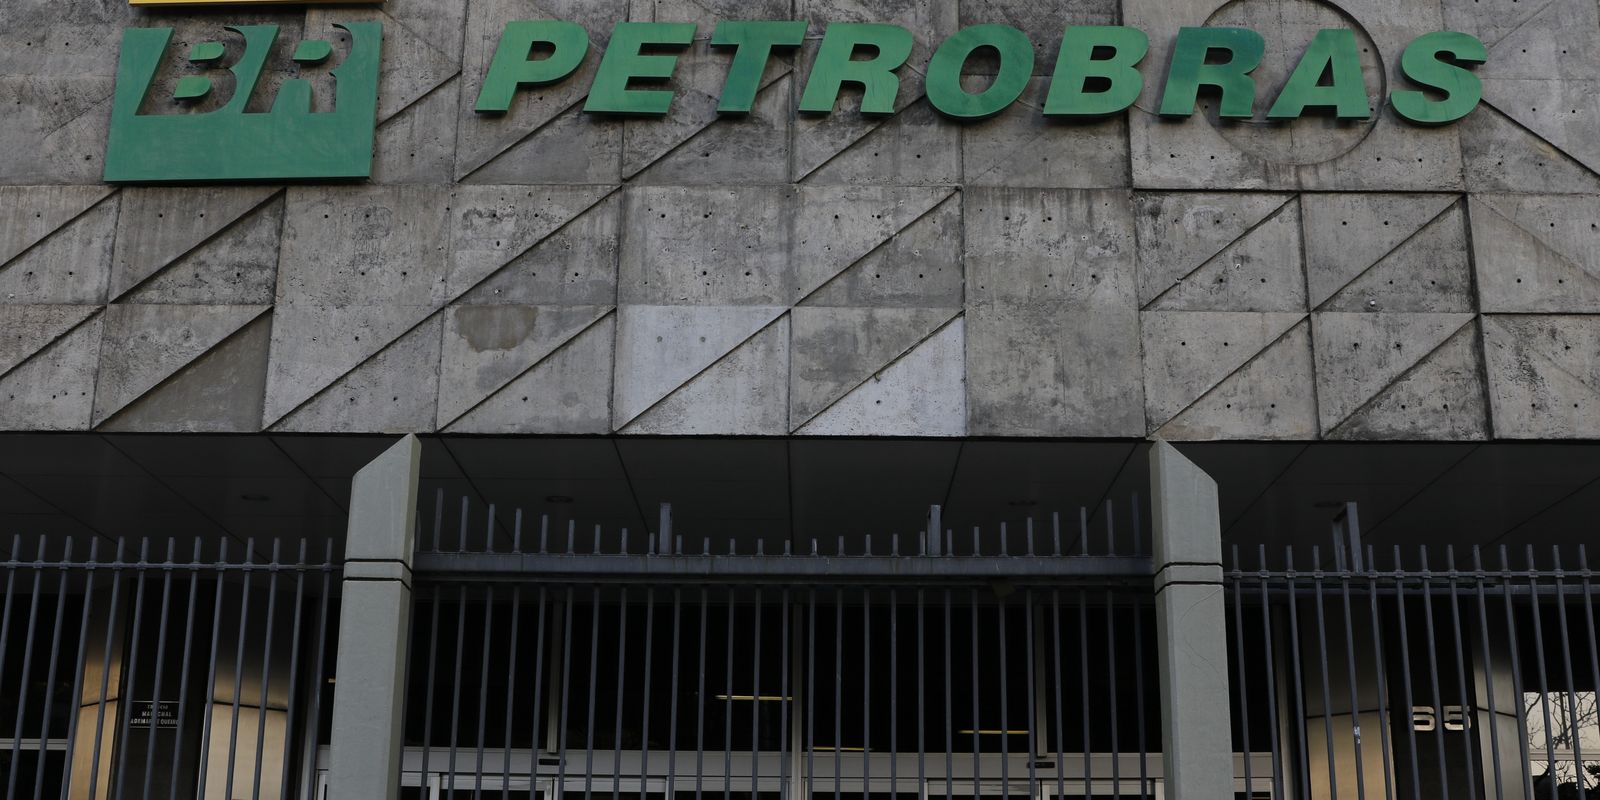 Conselho da Petrobras propõe pagar 50% dos dividendos extraordinários